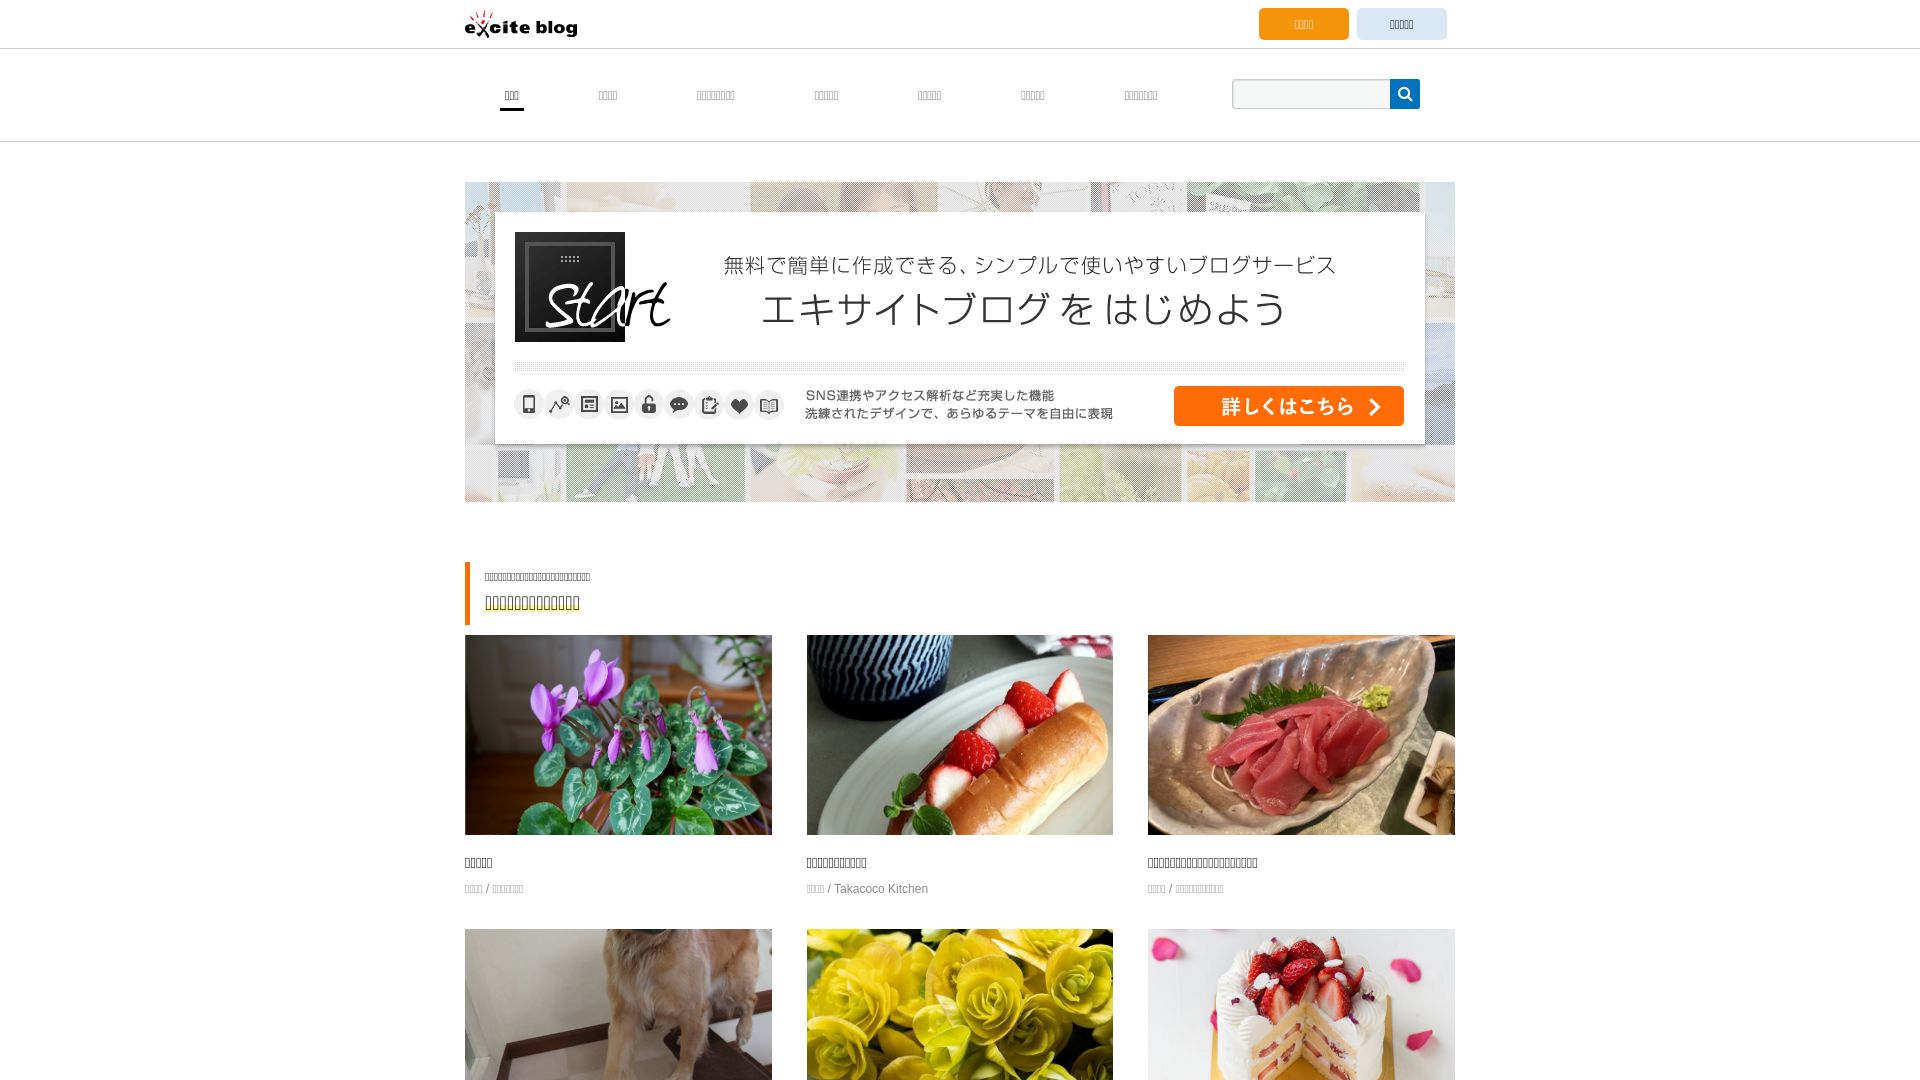 Estado web exblog.jp está   ONLINE